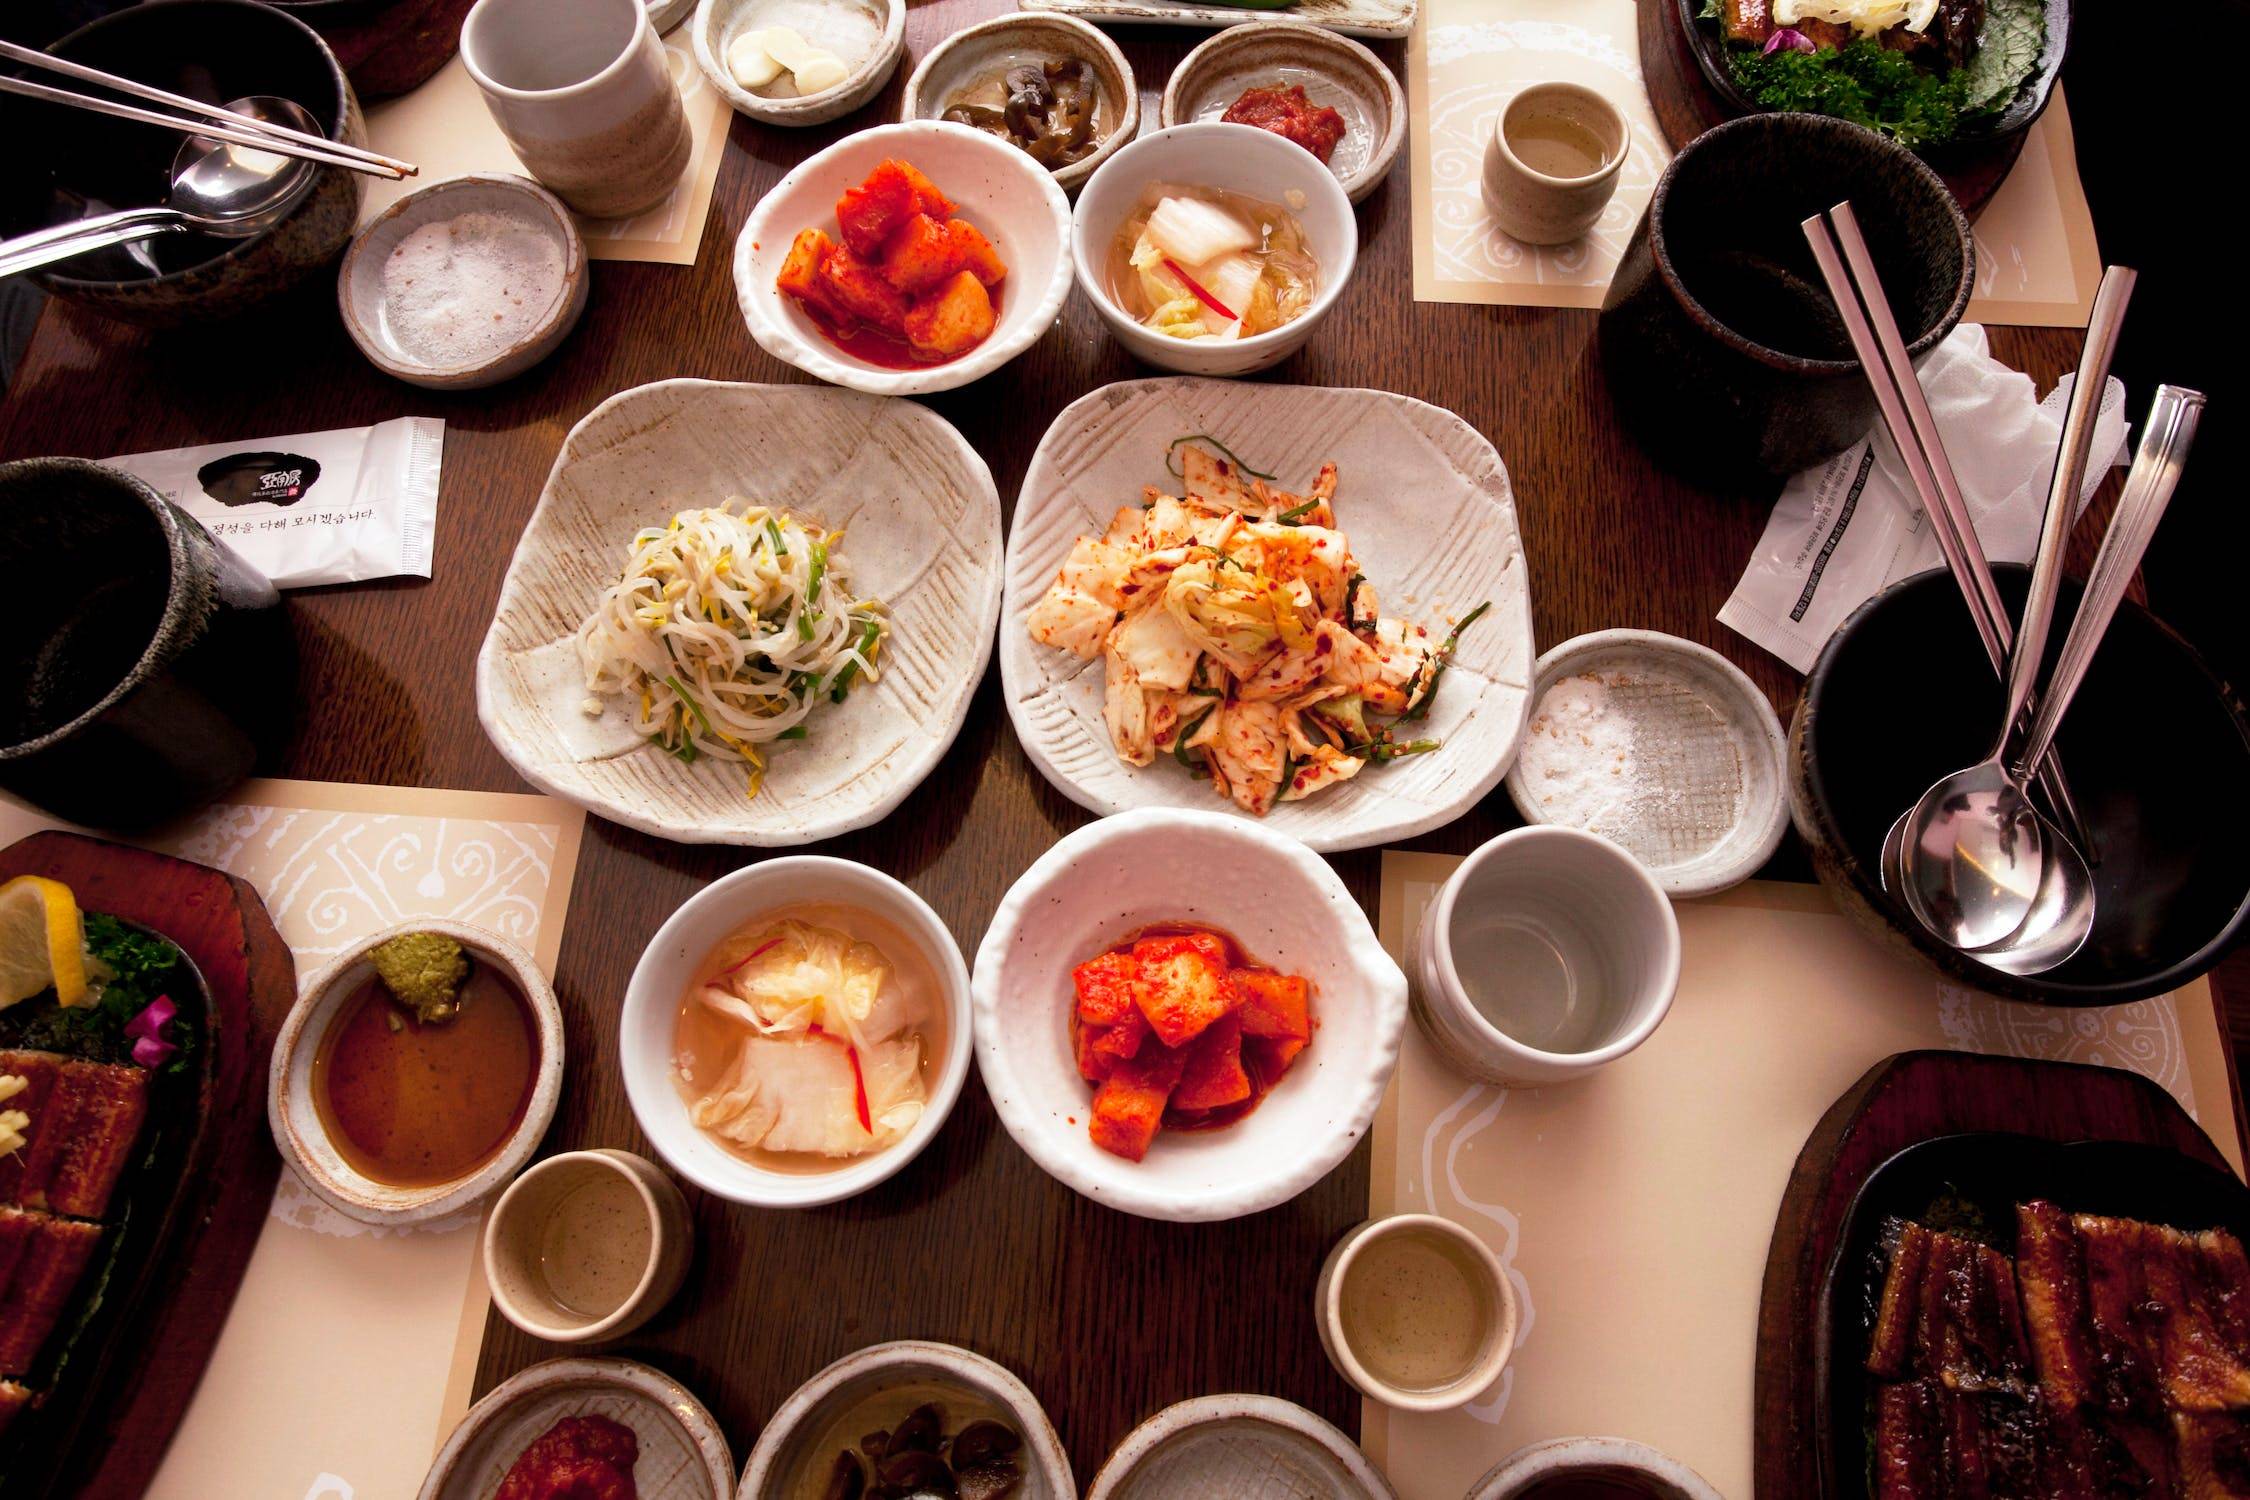 金屬材質、細長扁平的韓式筷子較適合吃泡菜